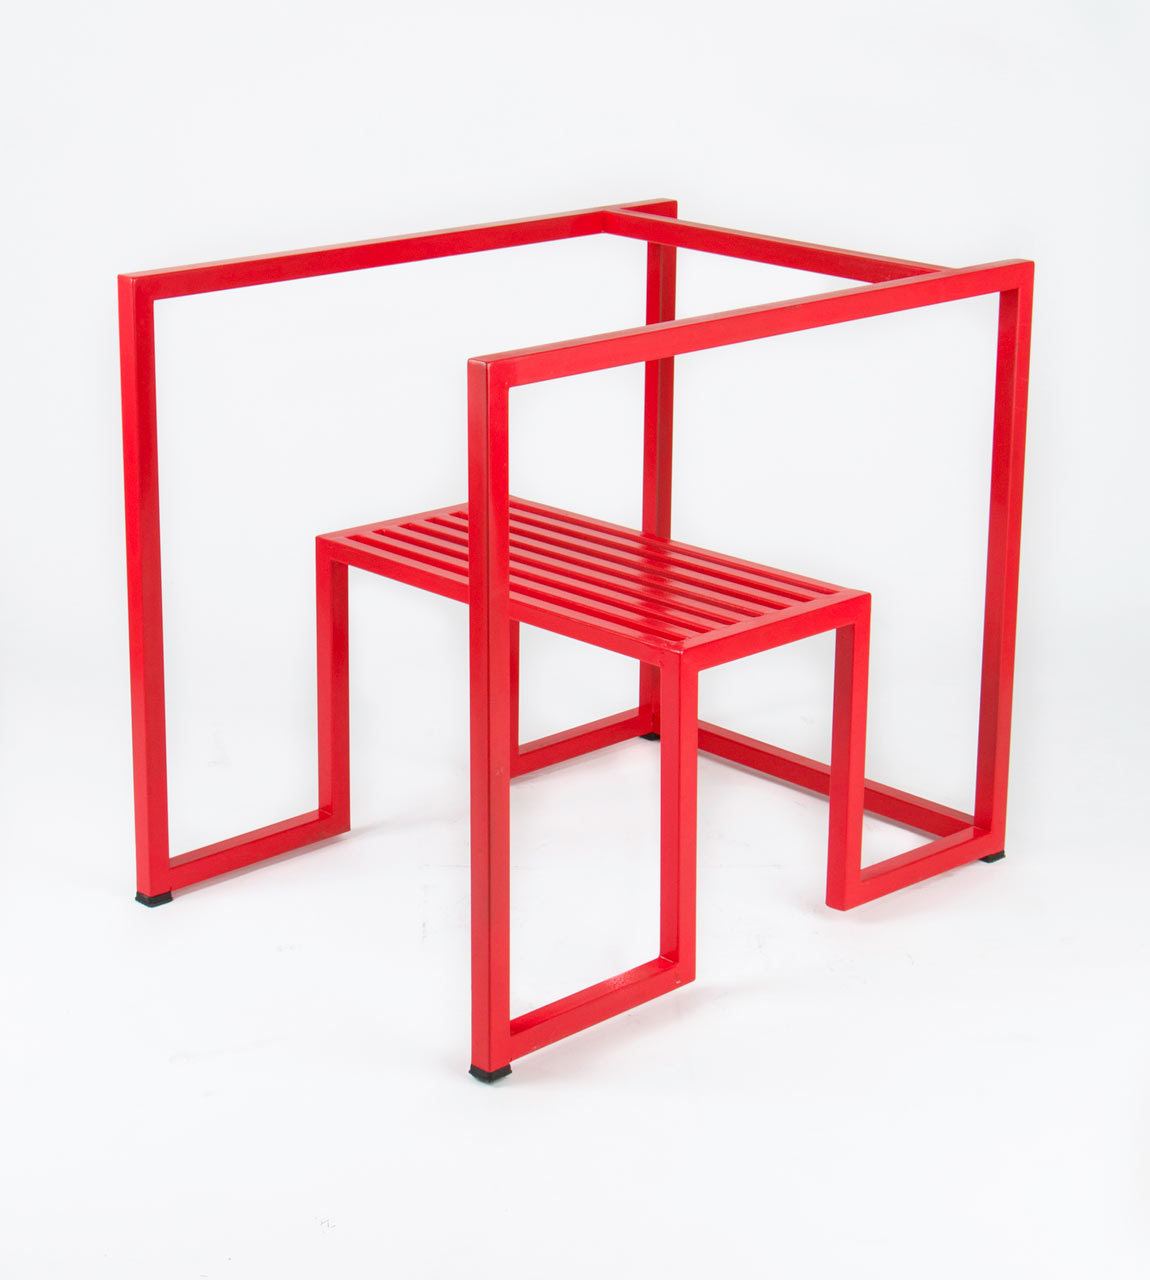 A Stripped Down, Geometric Chair